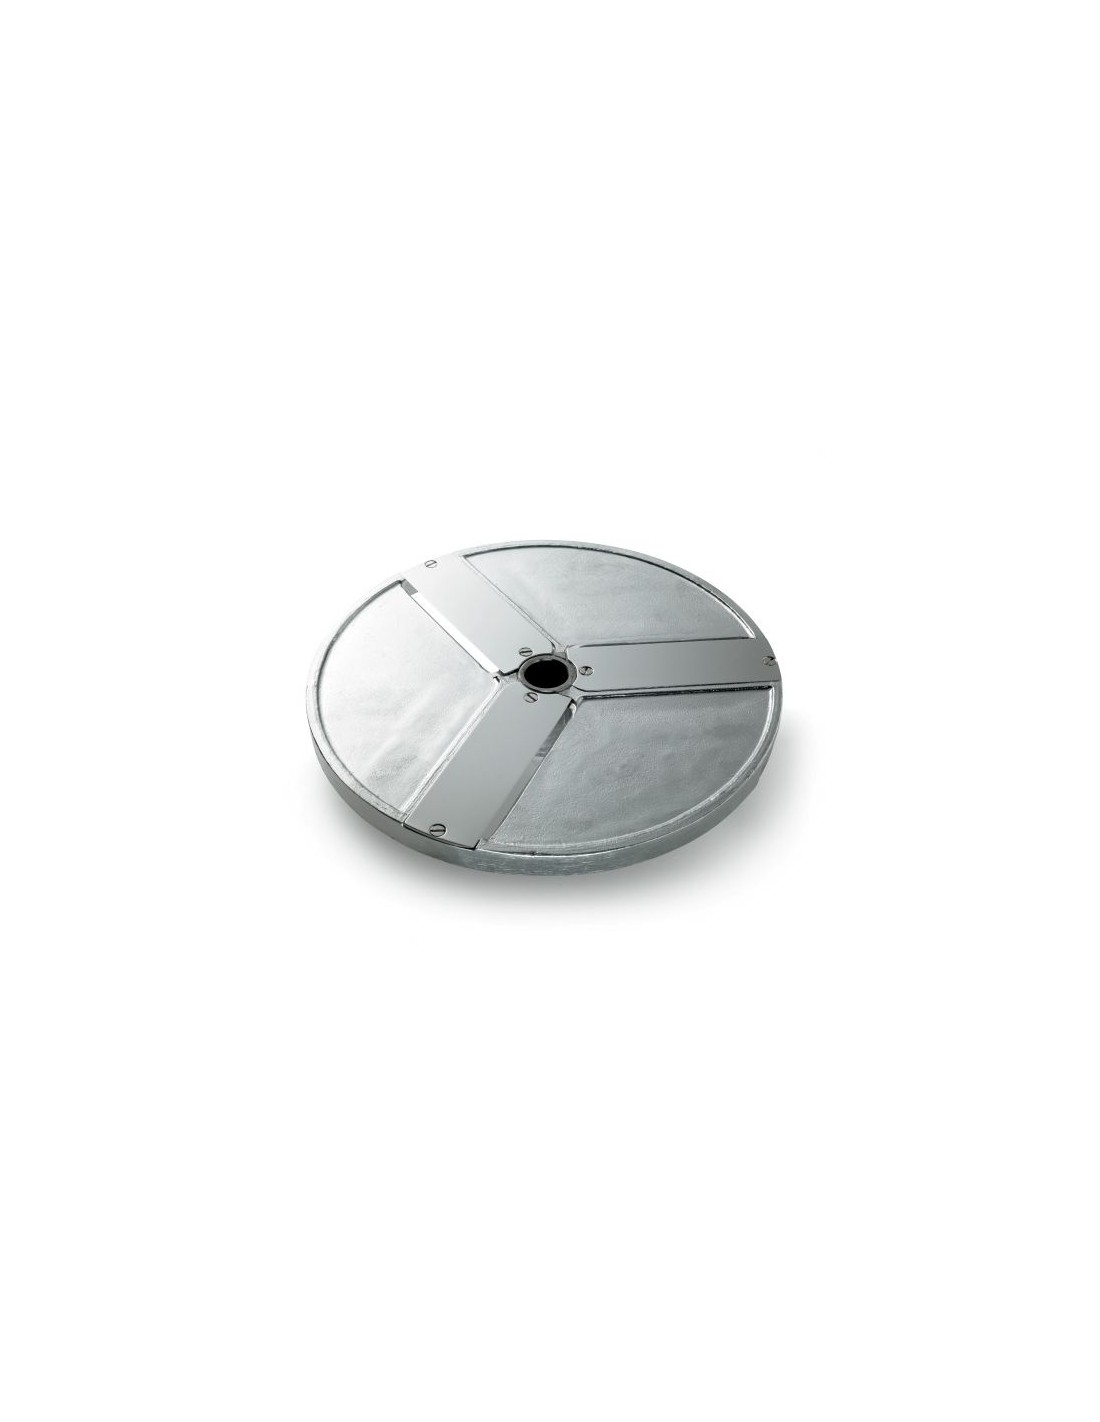 Disco para cortes - Diámetro 205 mm - Espesor de corte 80 mm